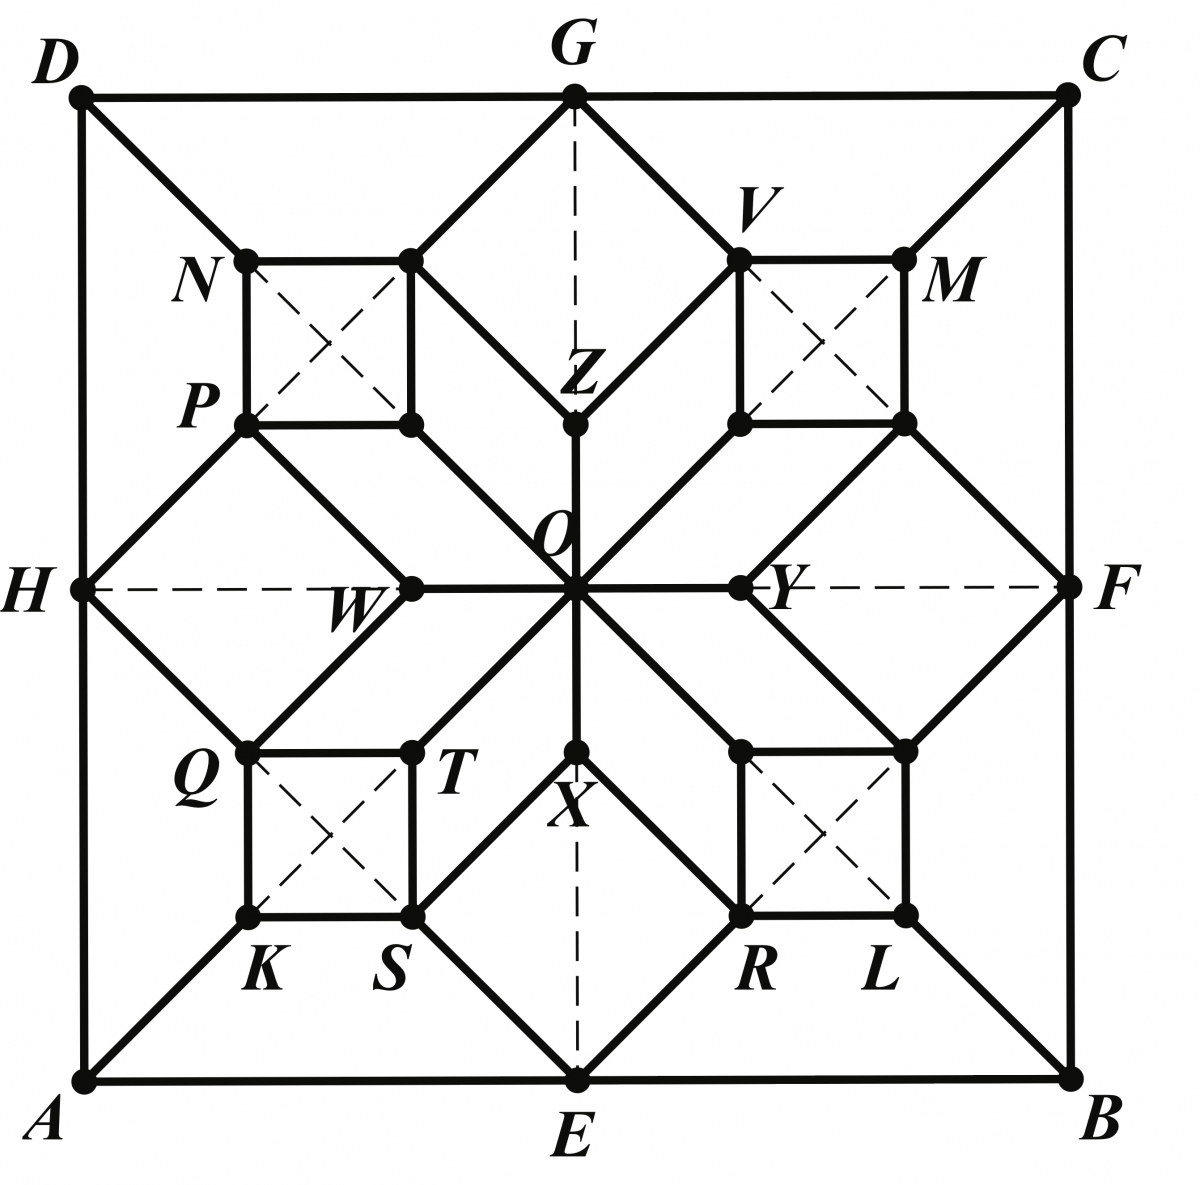 Geometrical diagram for parquet flooring.